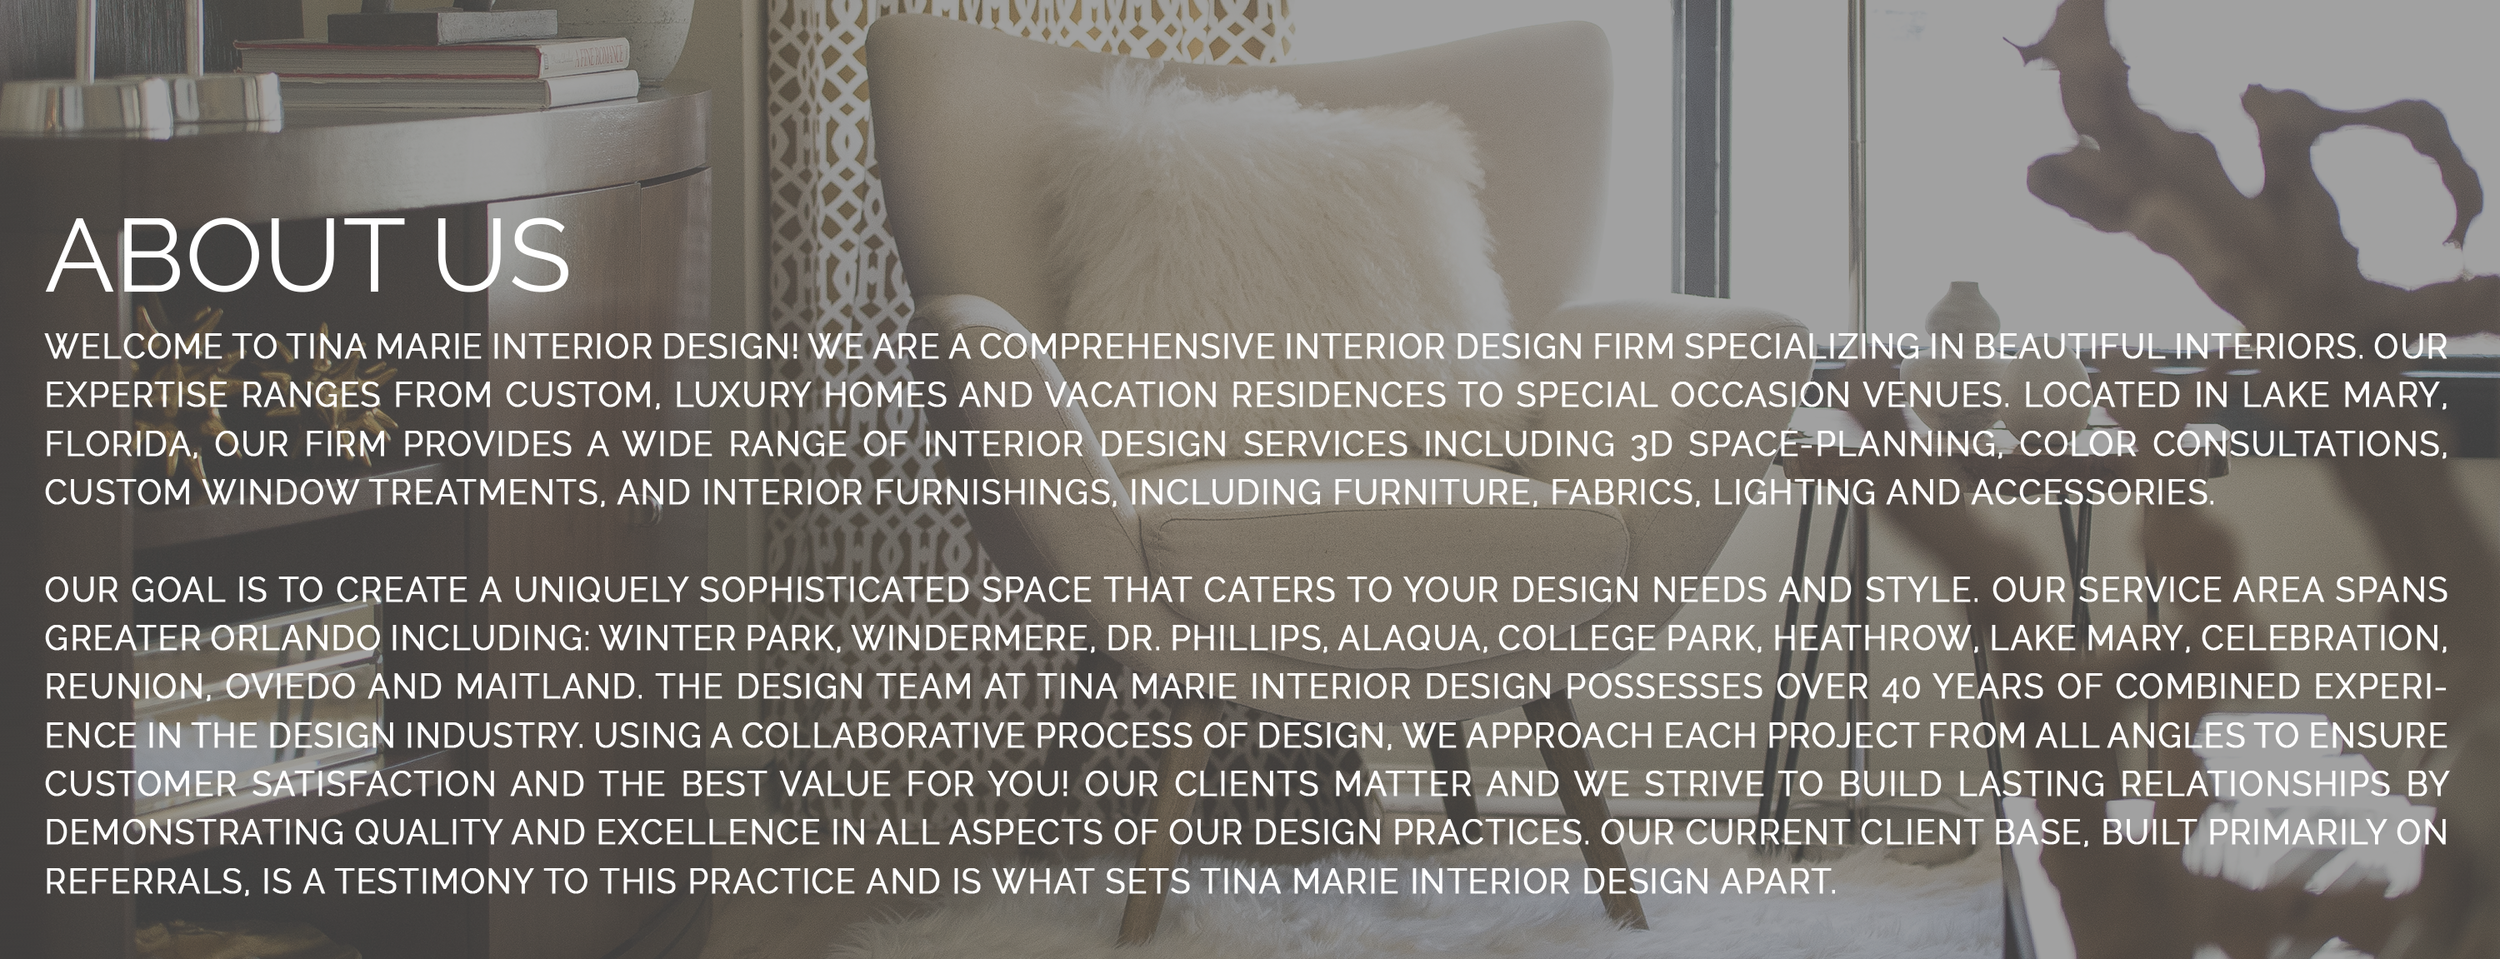 About Tina Marie Interior Design